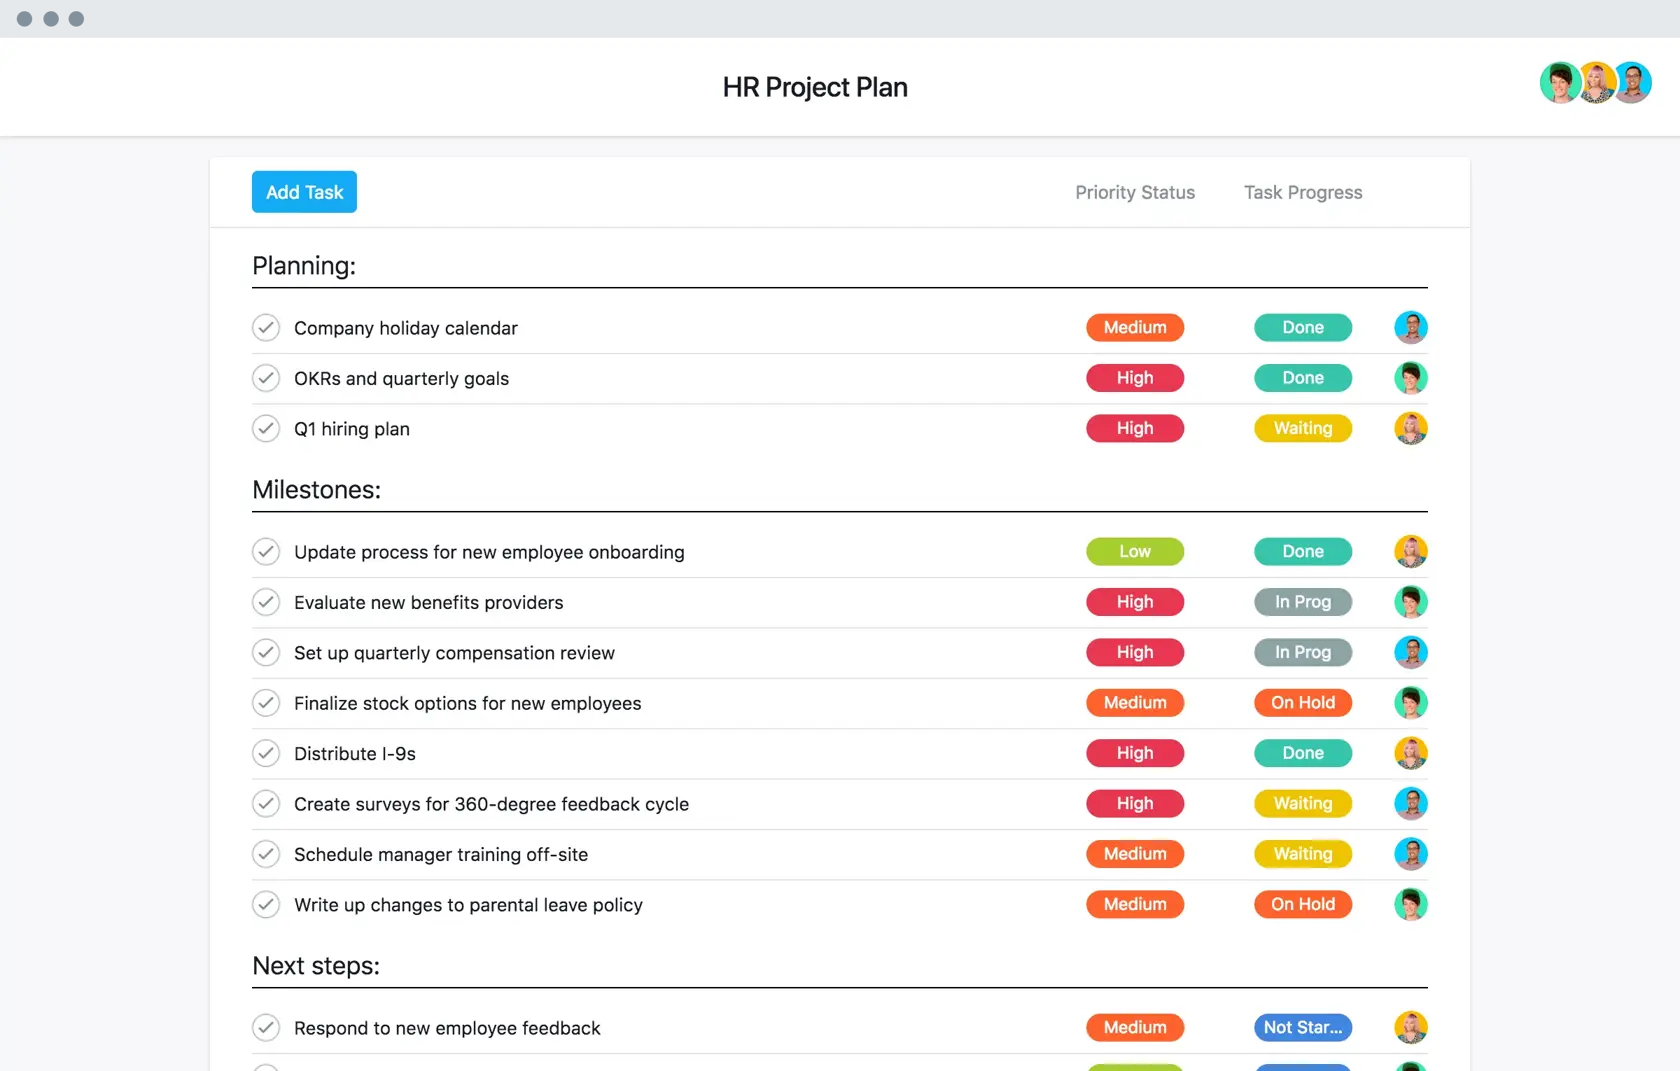 [이전 제품 UI] 스프레드시트 형식 프로젝트 보기를 가진 Asana에서의 HR 프로젝트 계획(목록)